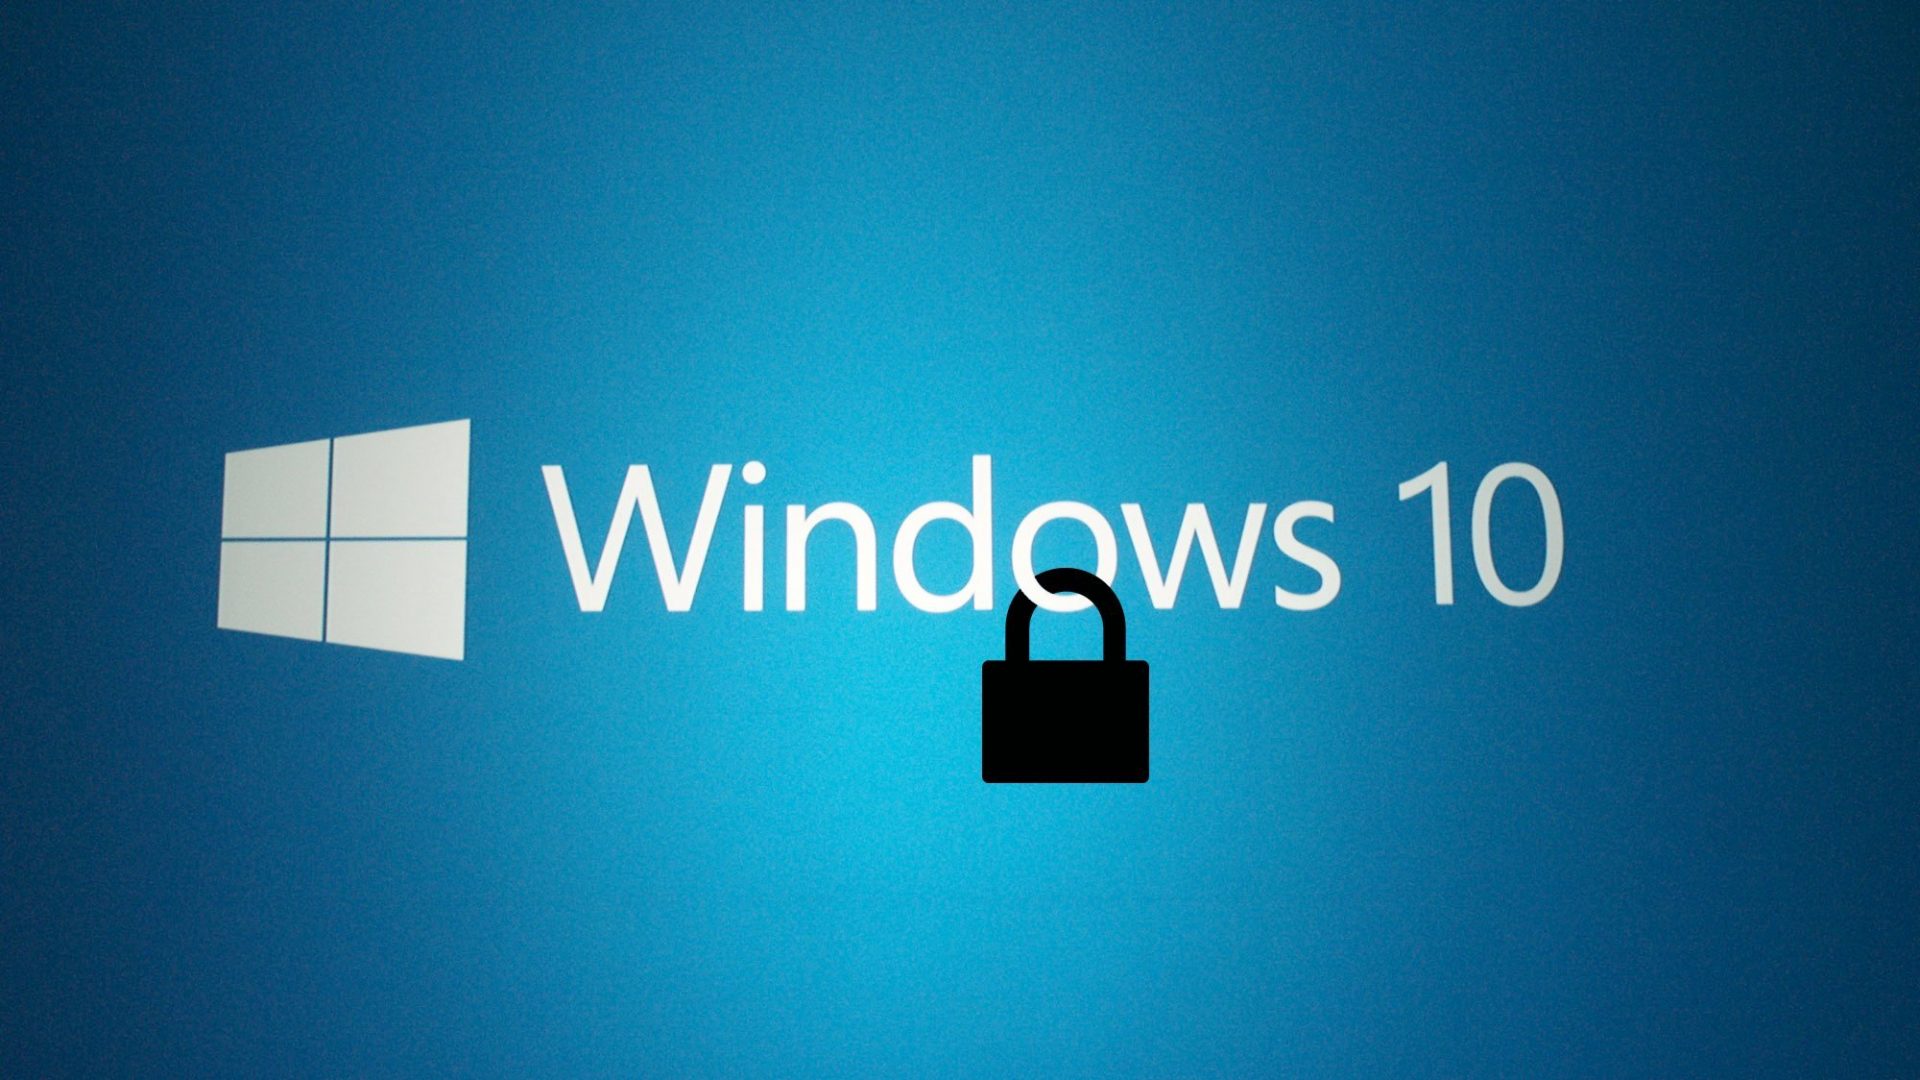 Windows-10-Güvenlik2-1920x1080.jpg